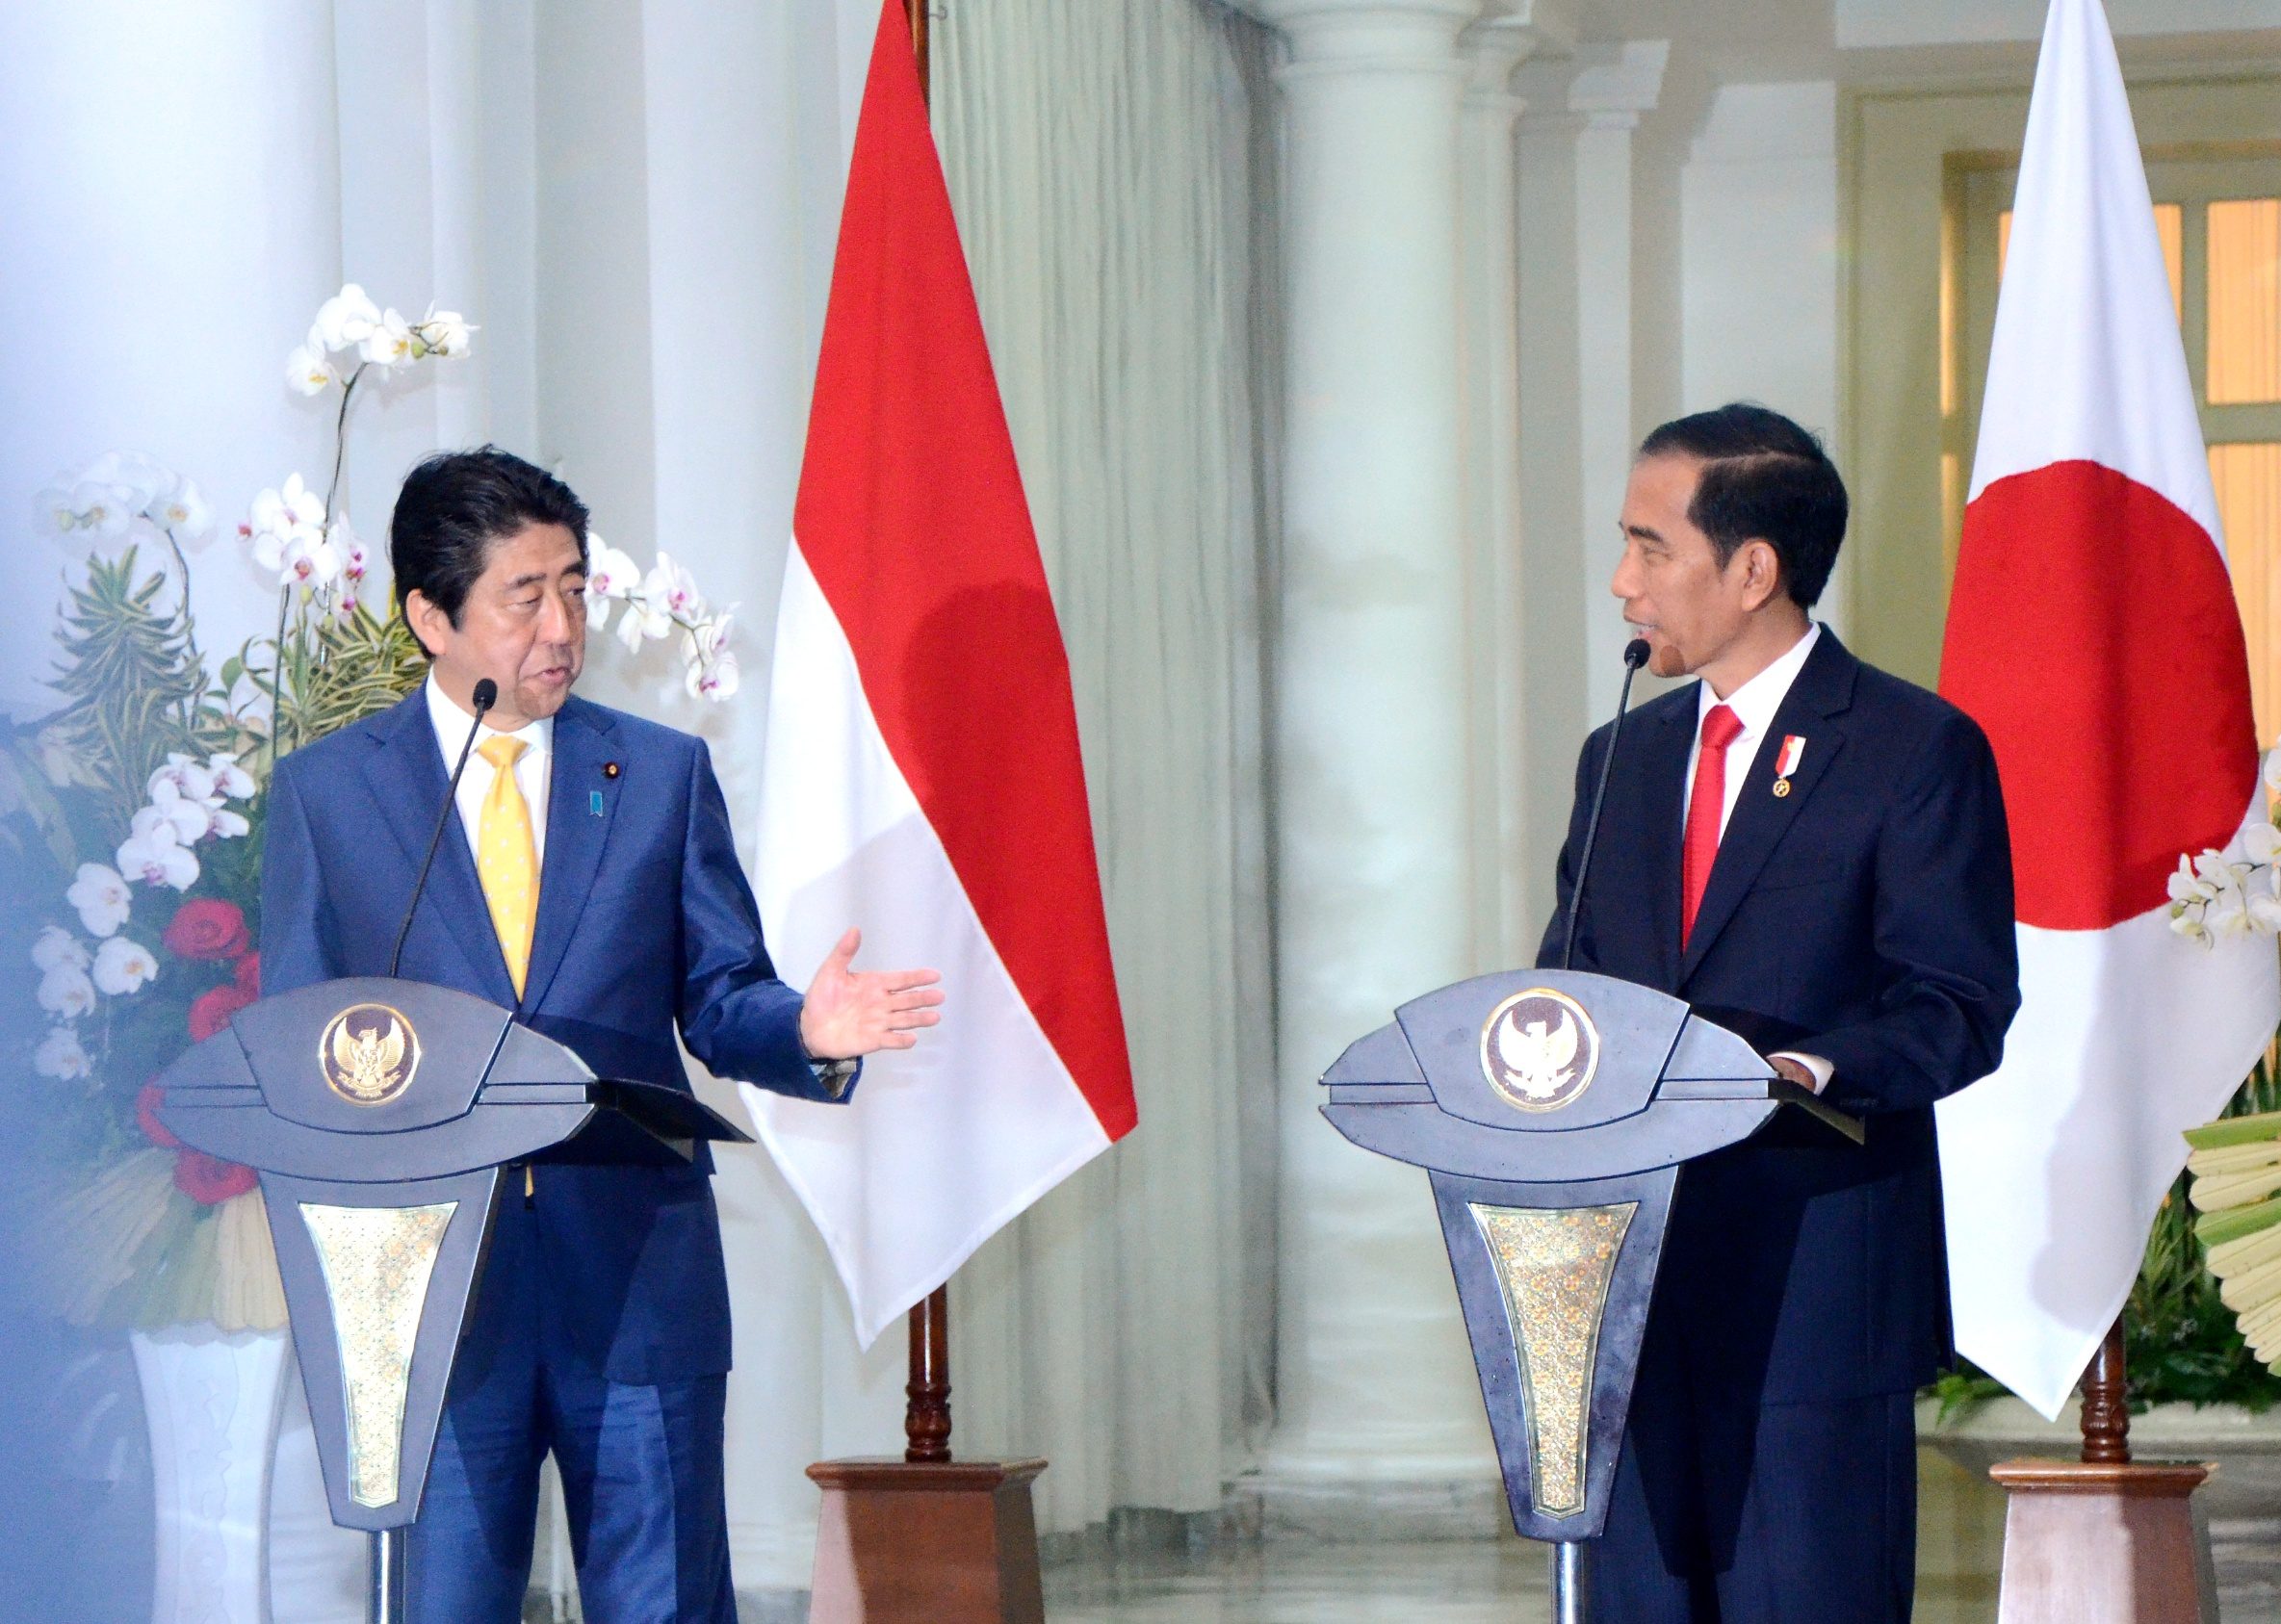 Pernyataan pers bersama Presiden Jokowi dan PM Jepang Shinzo Abe, di Istana Kepresidenan Bogor, Jabar, pada 15 Januari 2017. Foto dari Setkab.go.id 